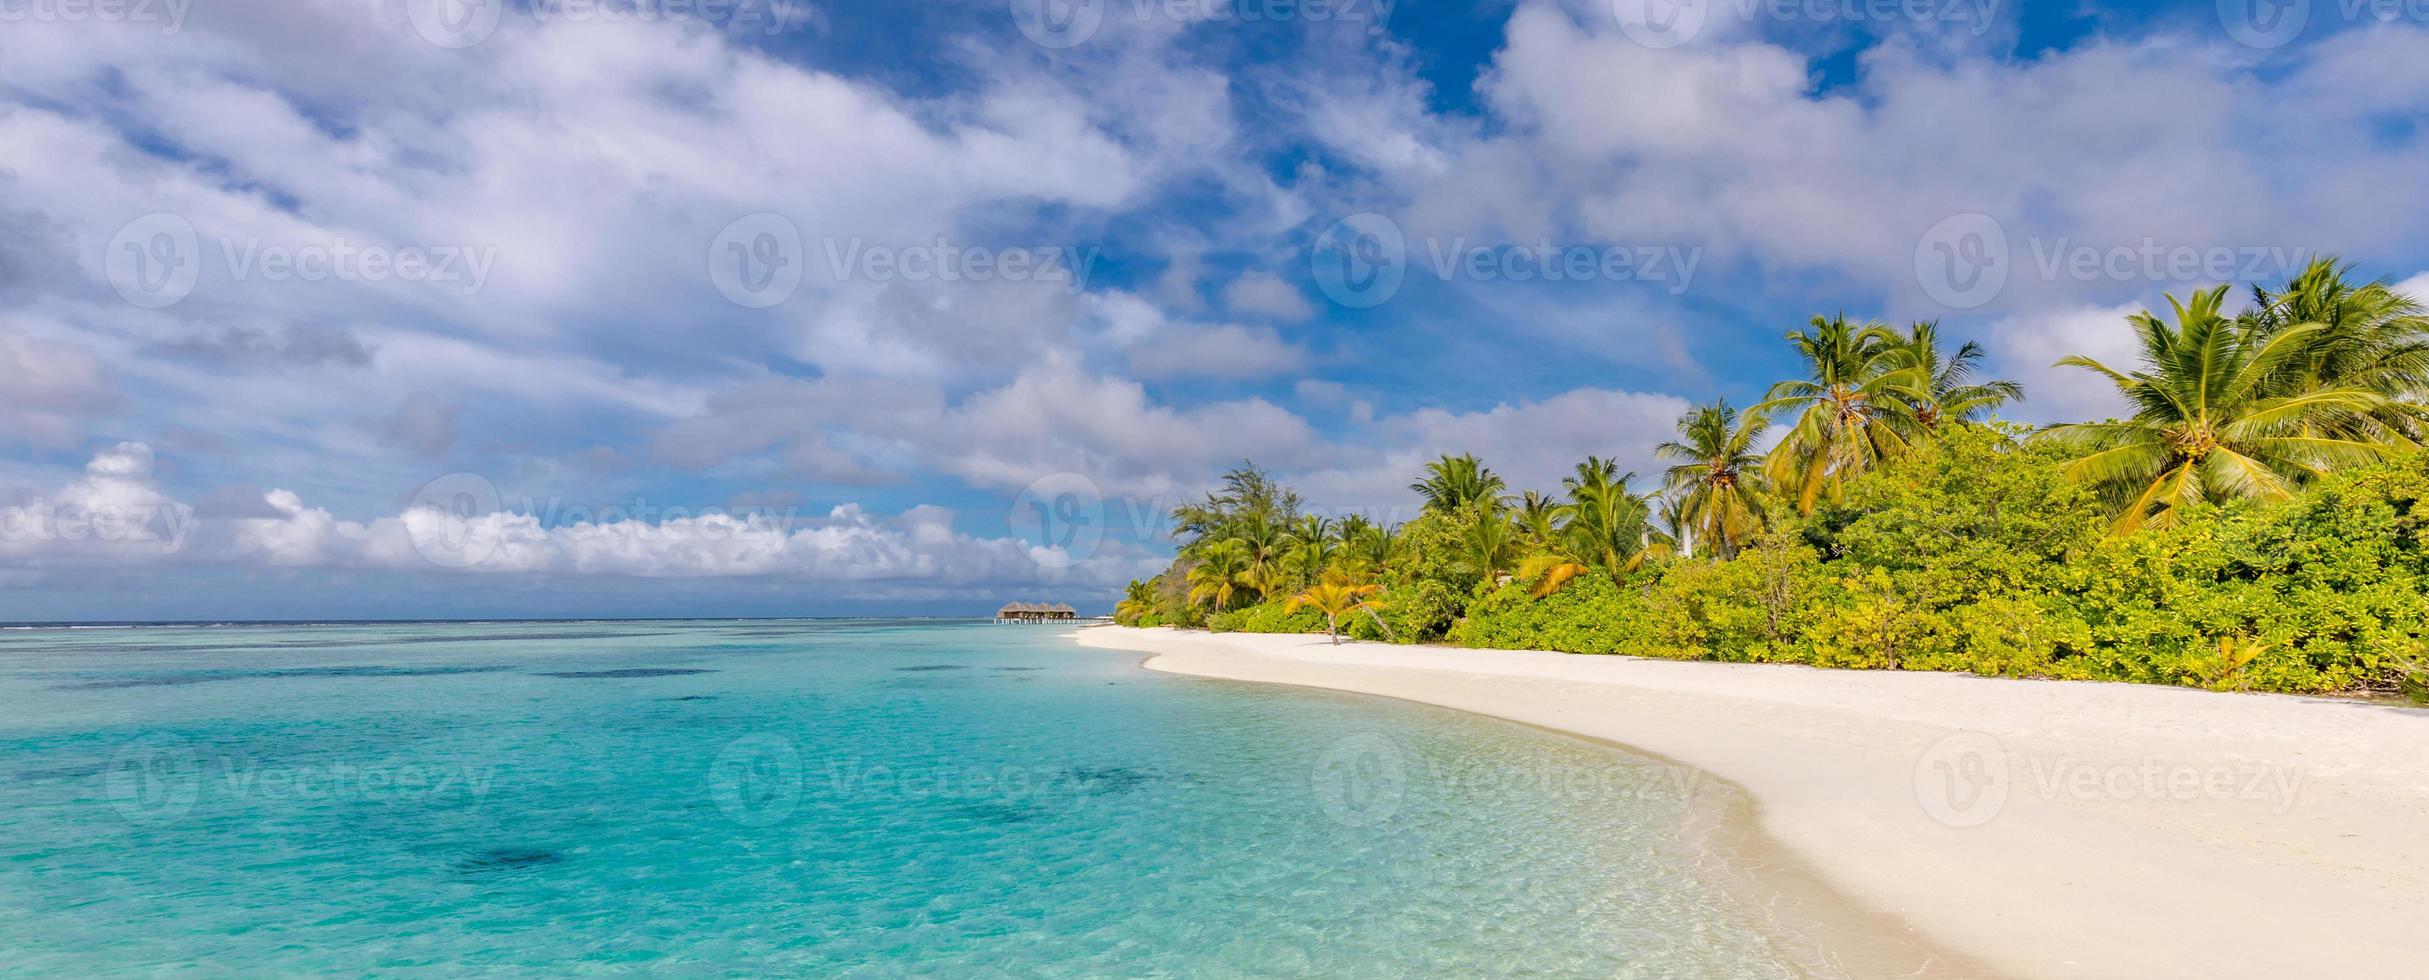 tropischer paradiesstrand mit weißem sand und kokospalmen reisen tourismus breites panorama hintergrundkonzept. schöne strandnatur, sommerferien und urlaubskonzept. Seesandhimmel, friedliche Naturansicht foto